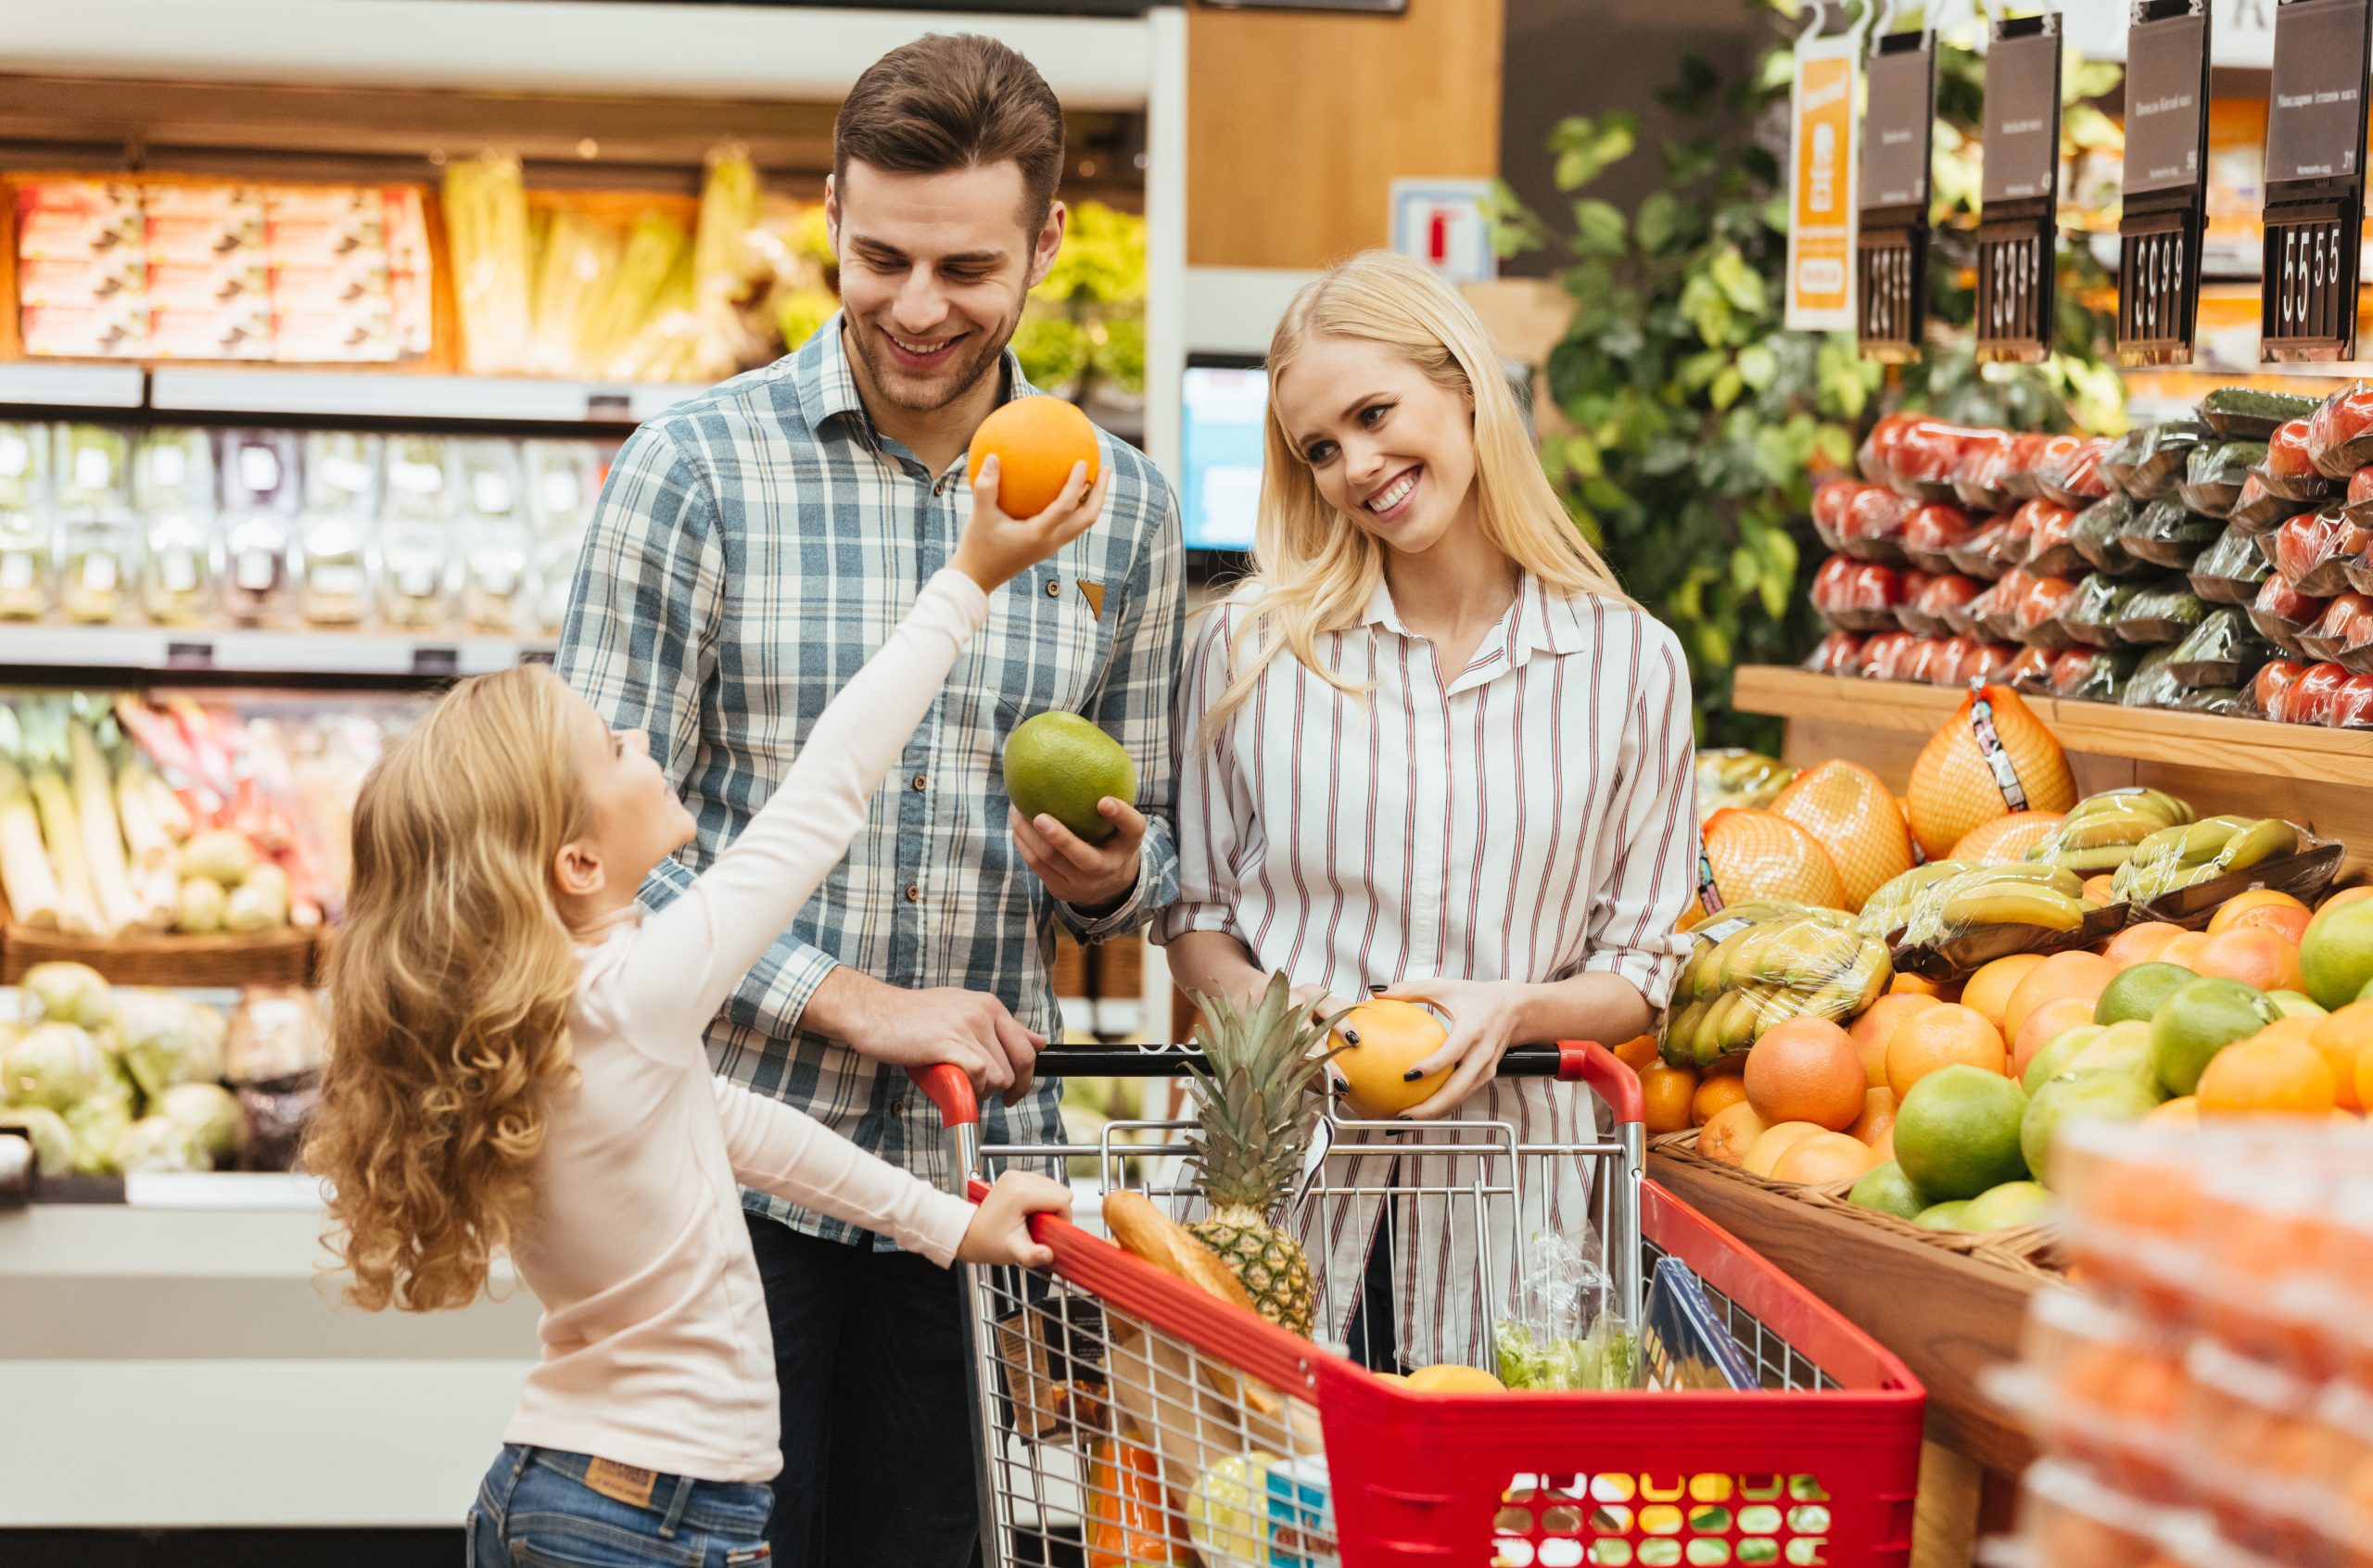 Featured image for “Abastecimento dos supermercados foi melhor em outubro”